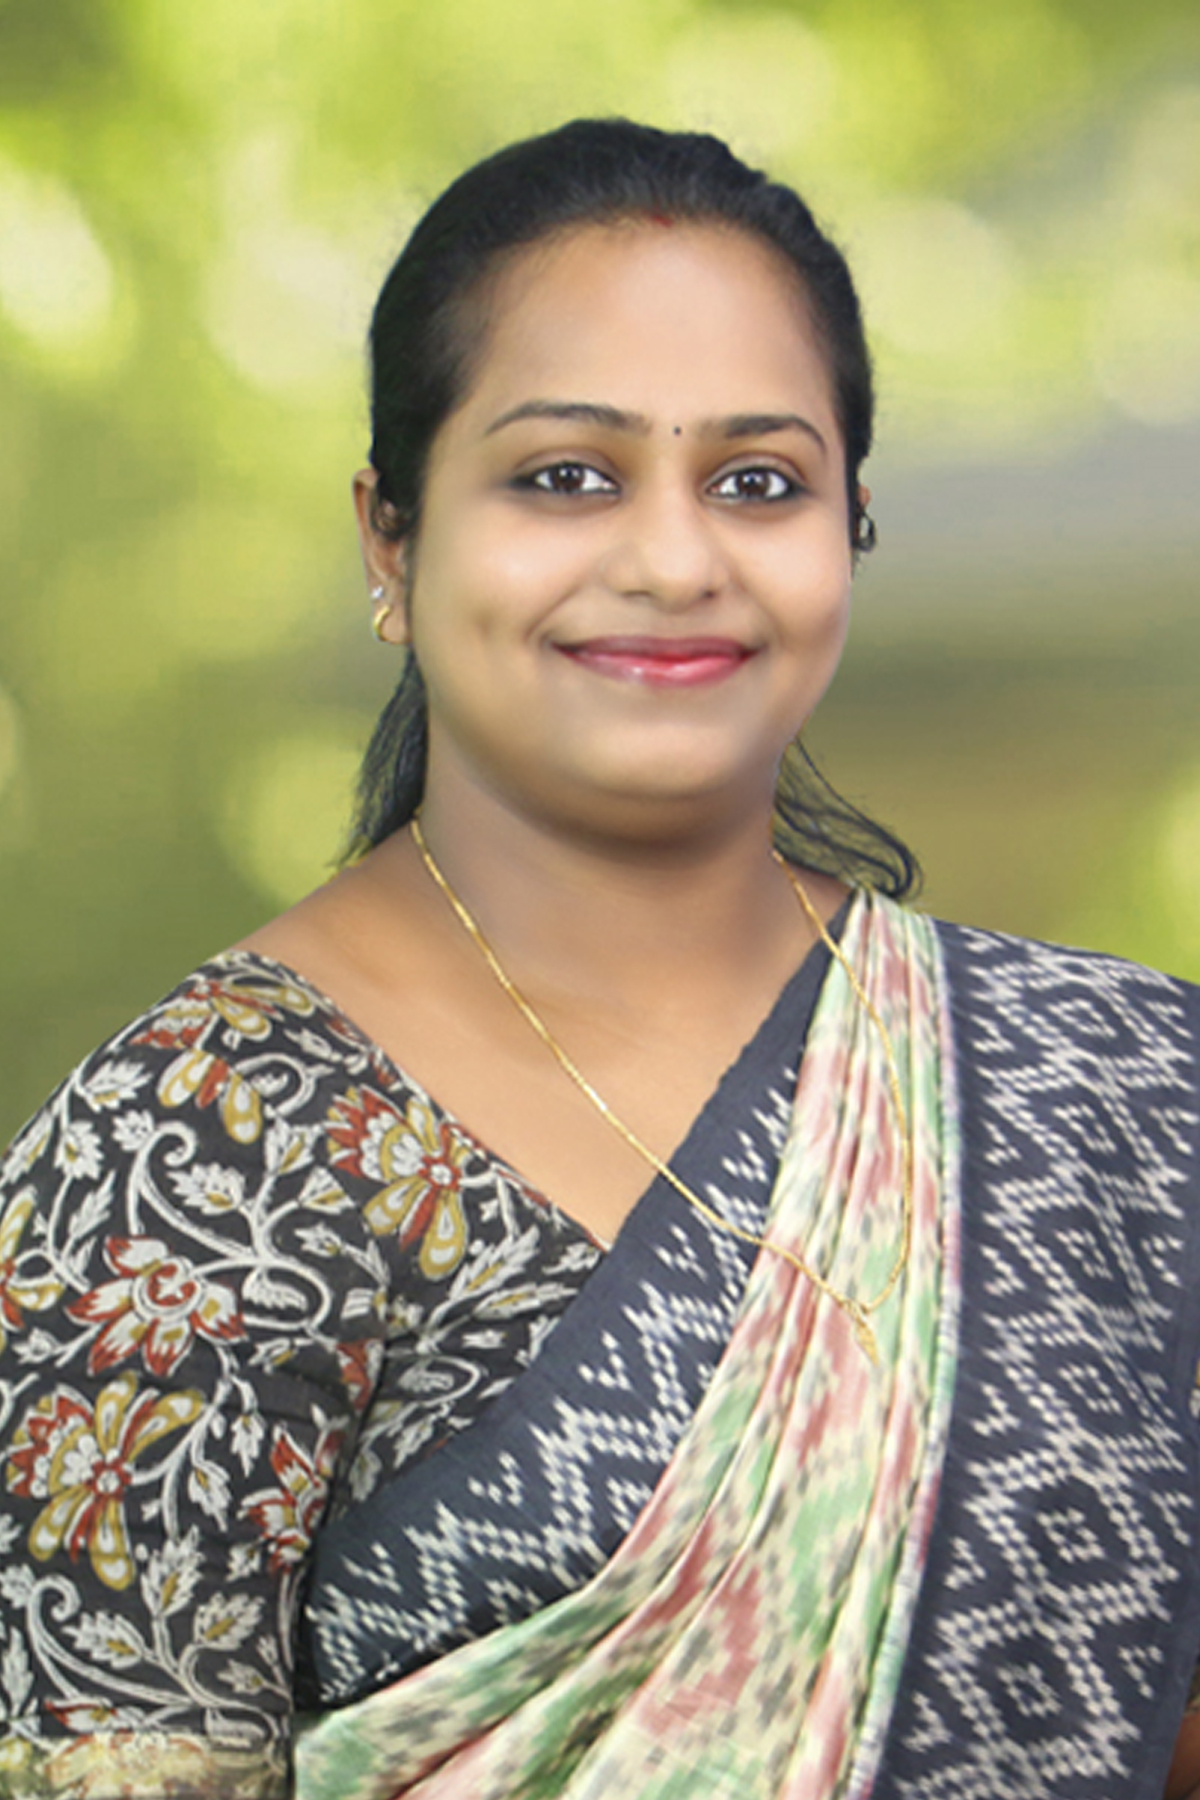 Ms. Akhila Lal